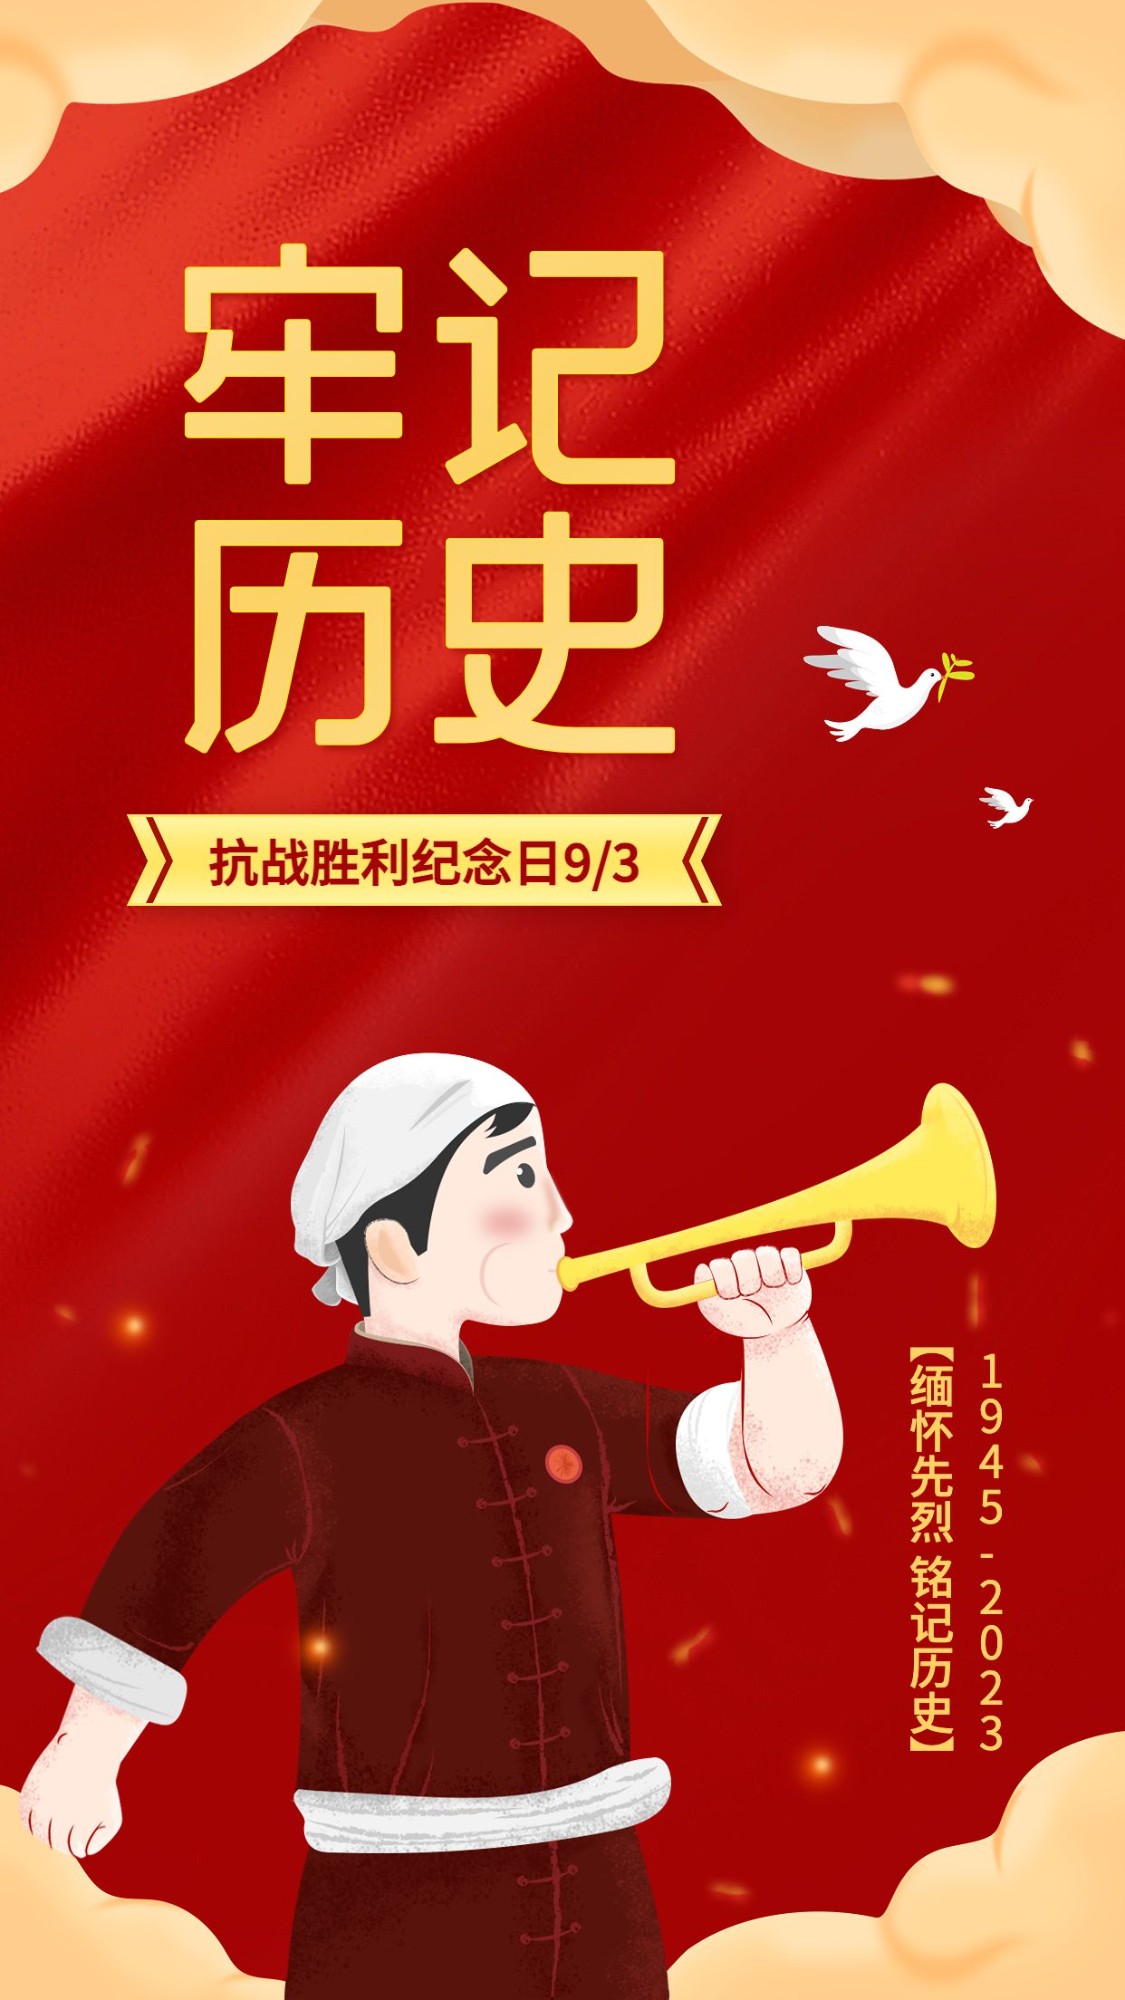 中国抗战胜利纪念日节日祝福手绘风手机海报预览效果